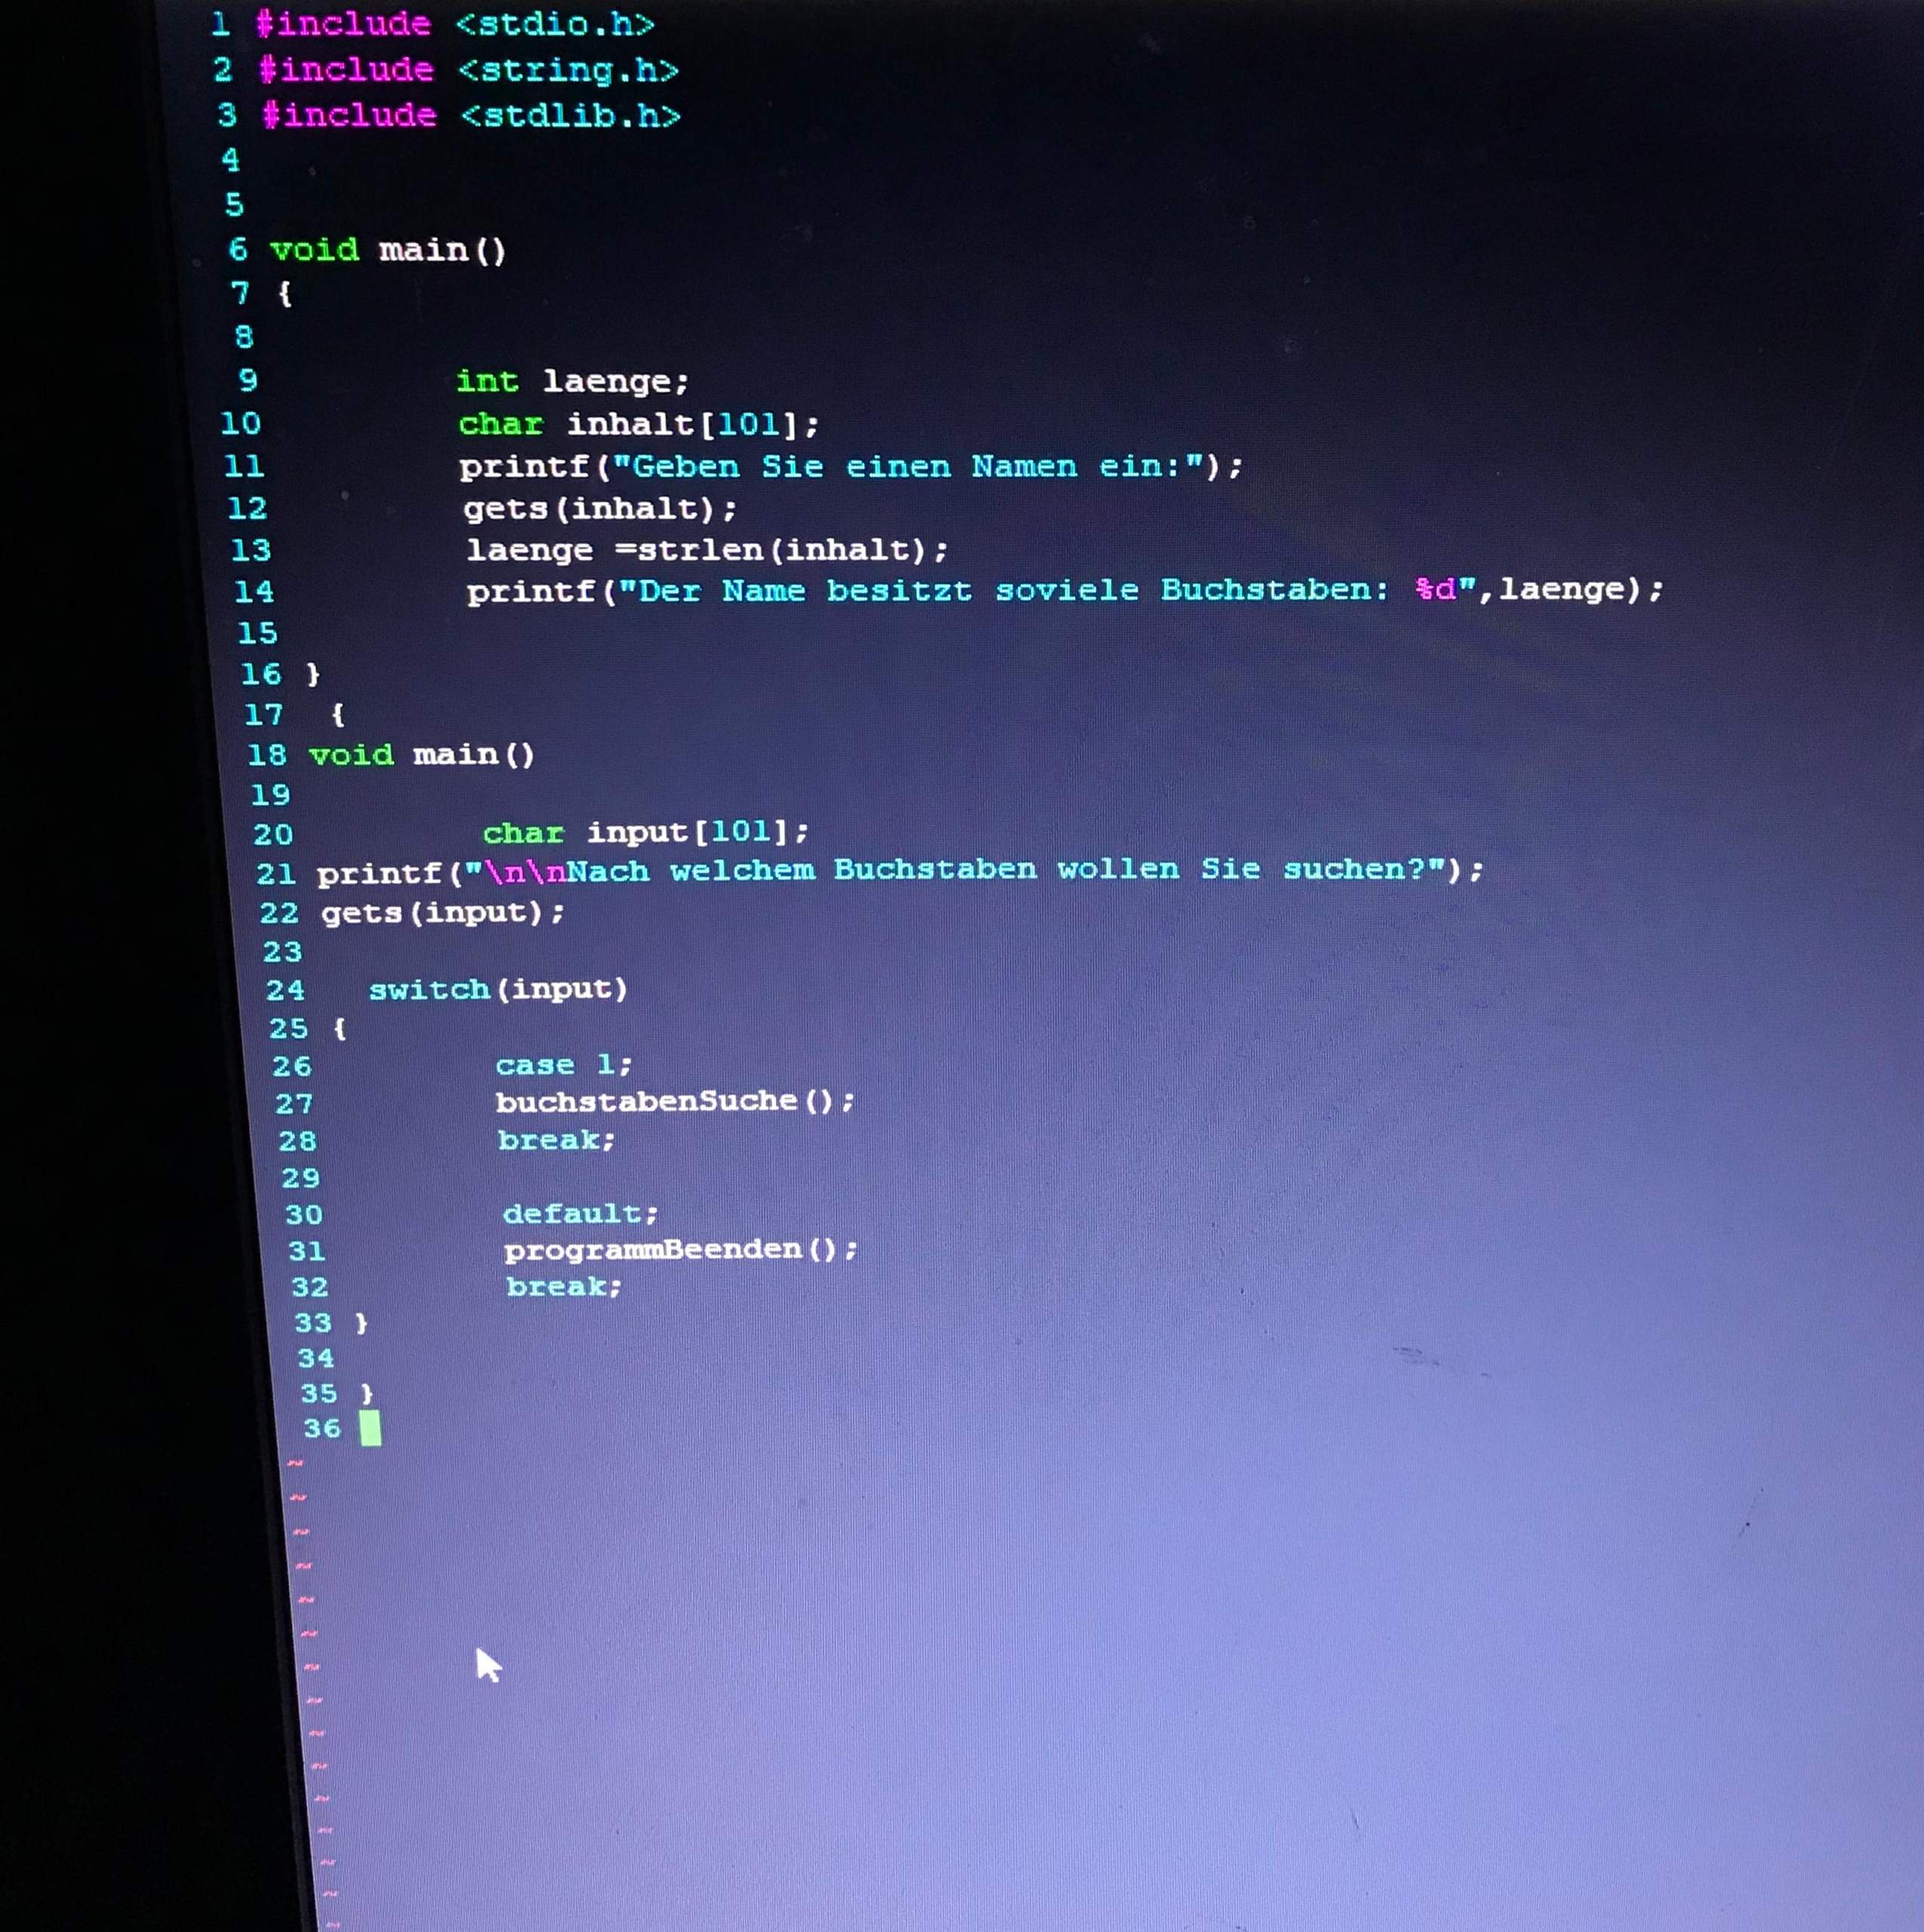 mein-programm-zeigt-error-computer-programmieren-c